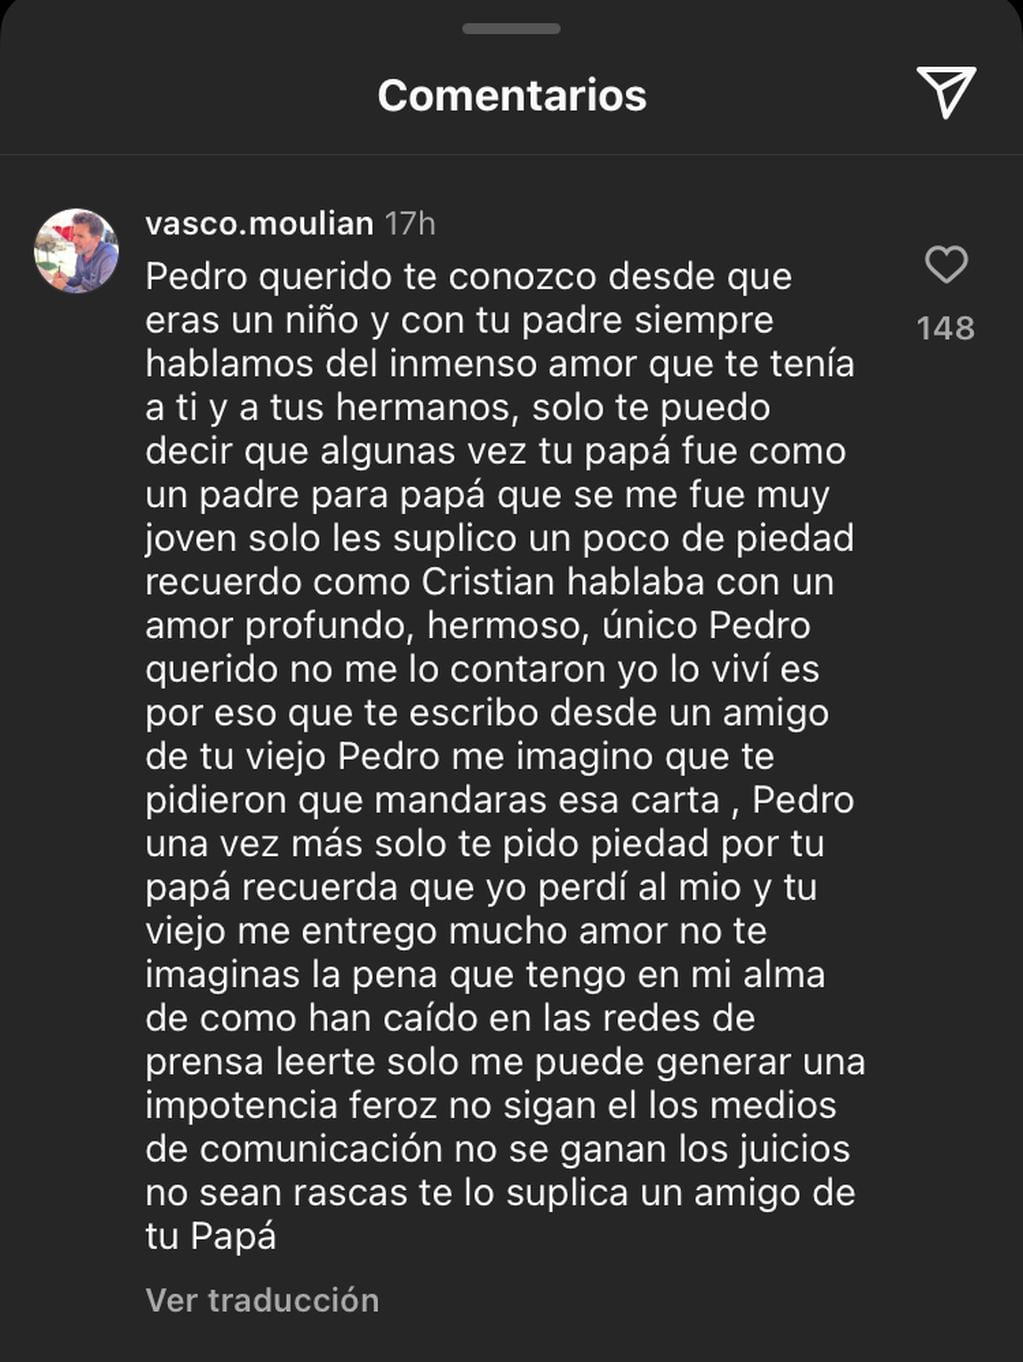 “Solo te pido piedad por tu papá”: el mensaje de Vasco Moulian a Pedro Campos tras apoyar a su hermana en querella